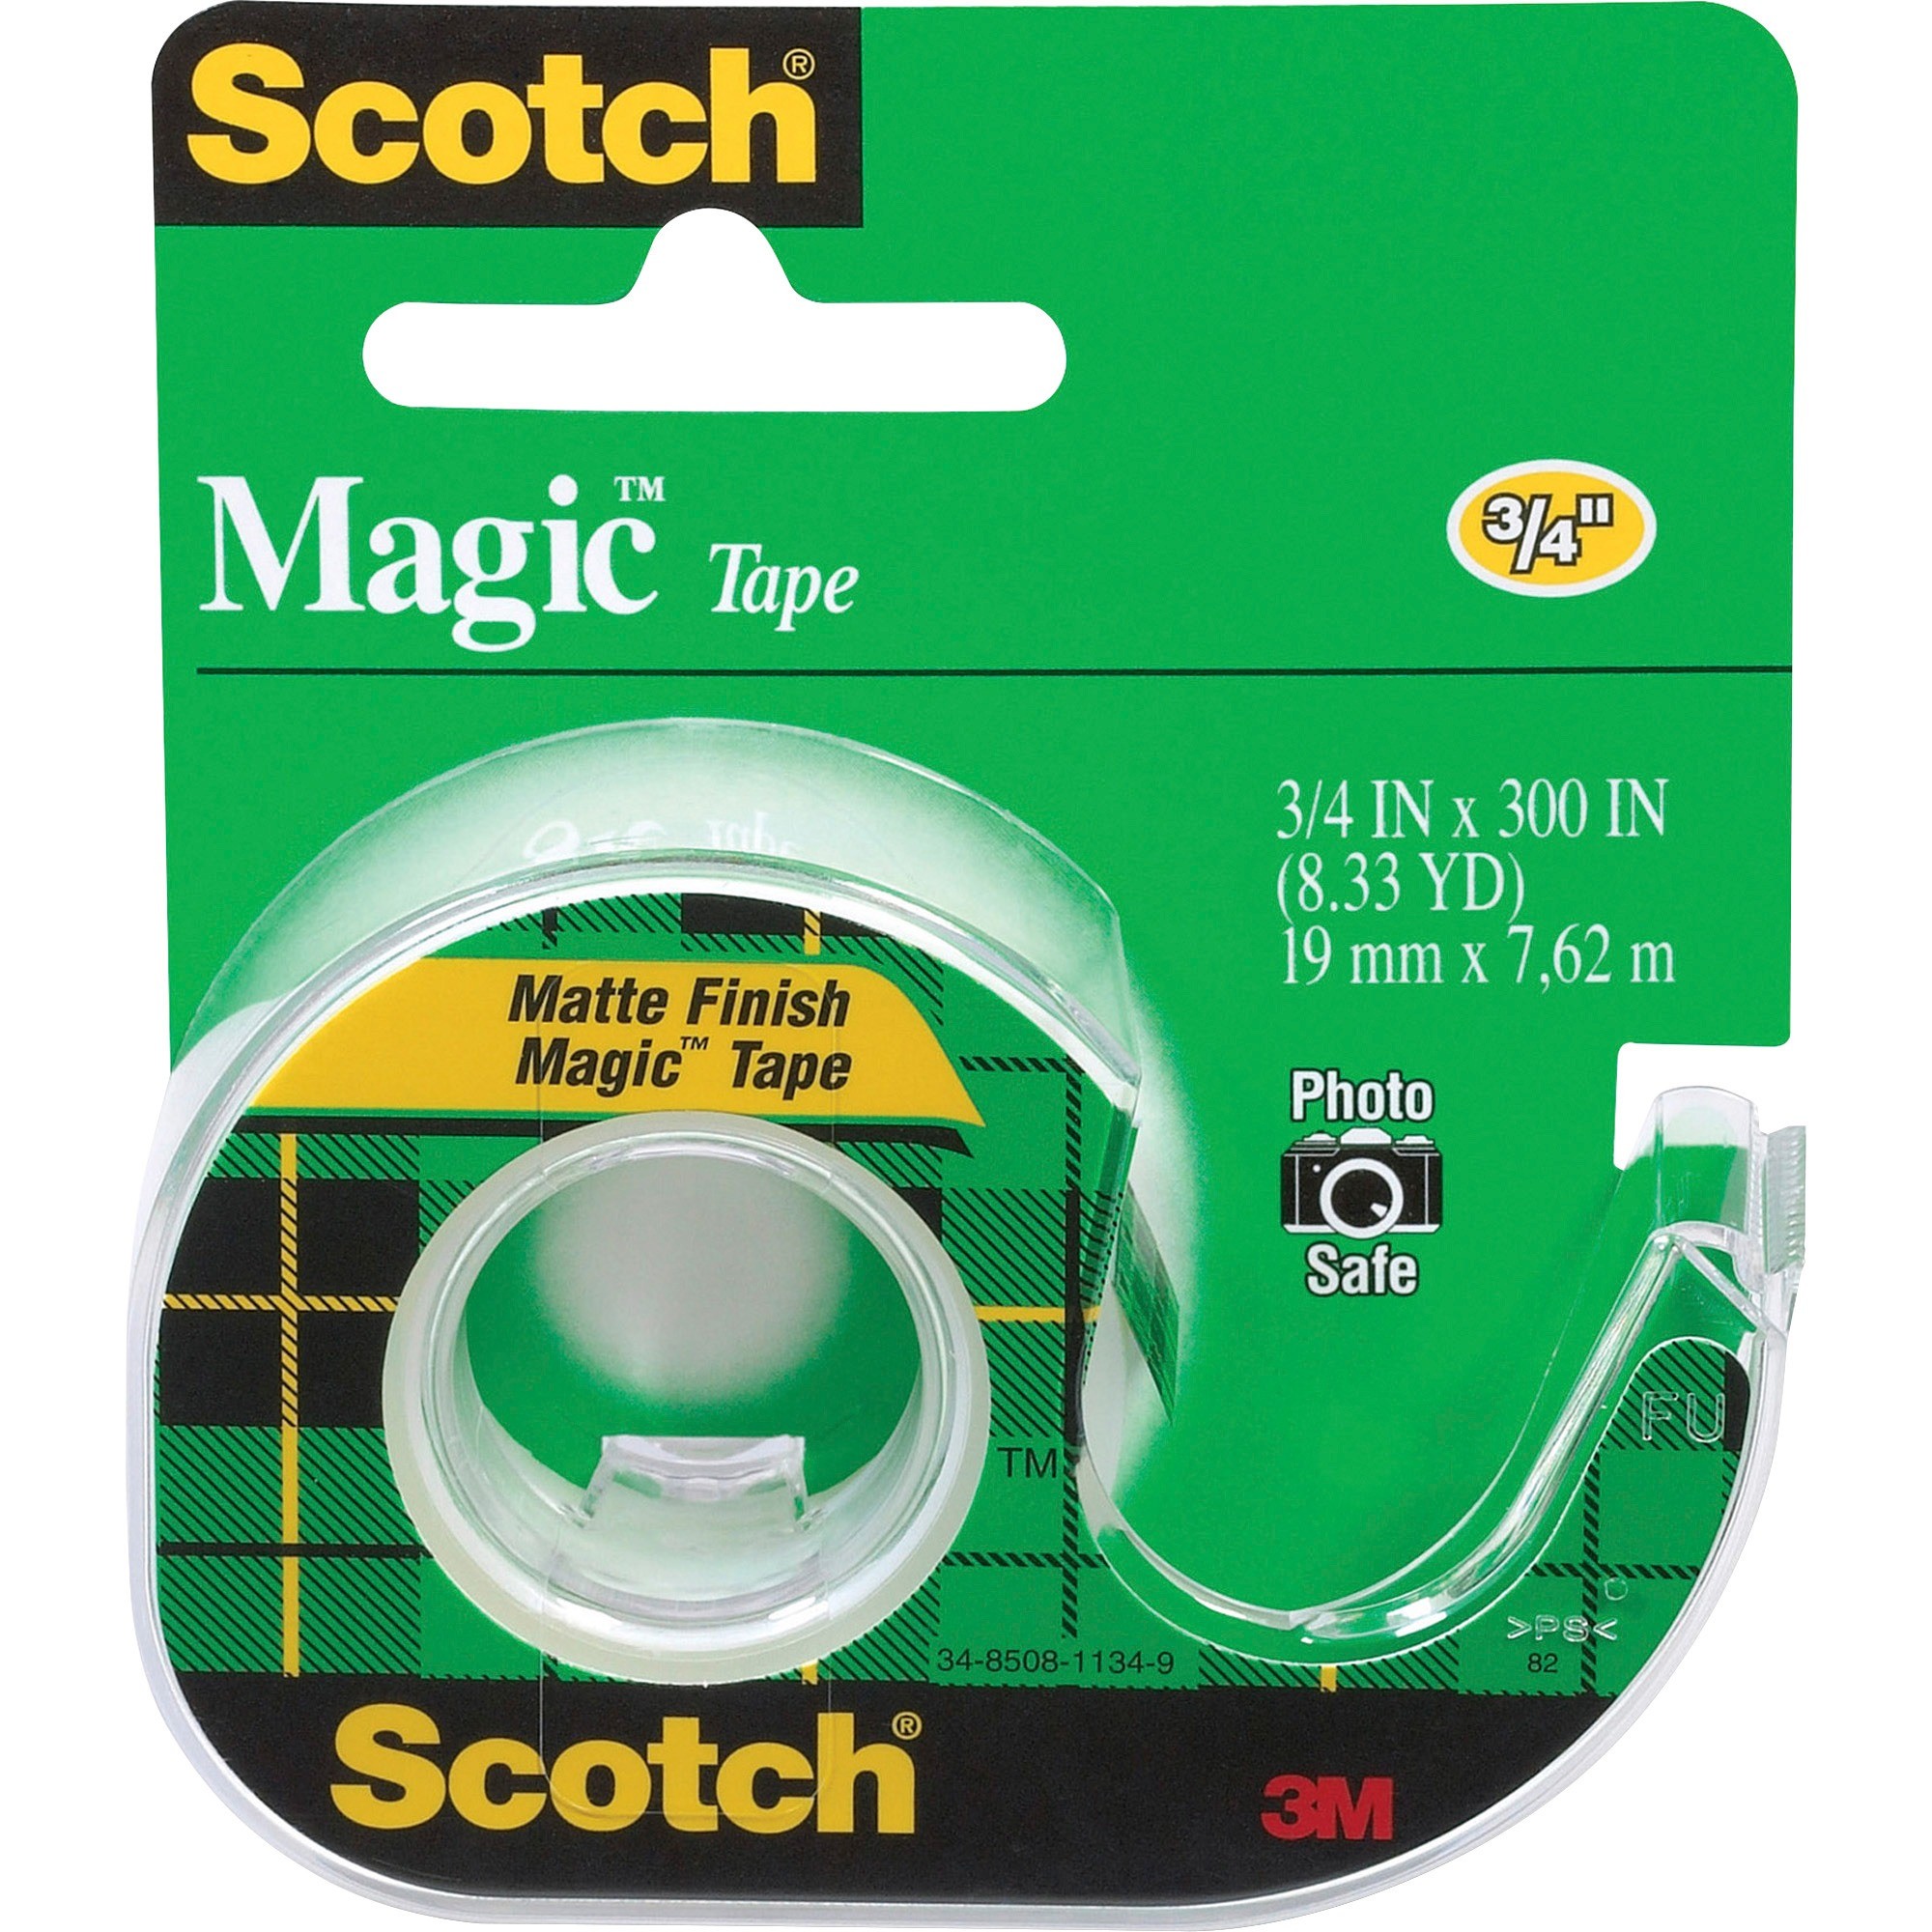 Scotch Magic Tape - Ready-Set-Start